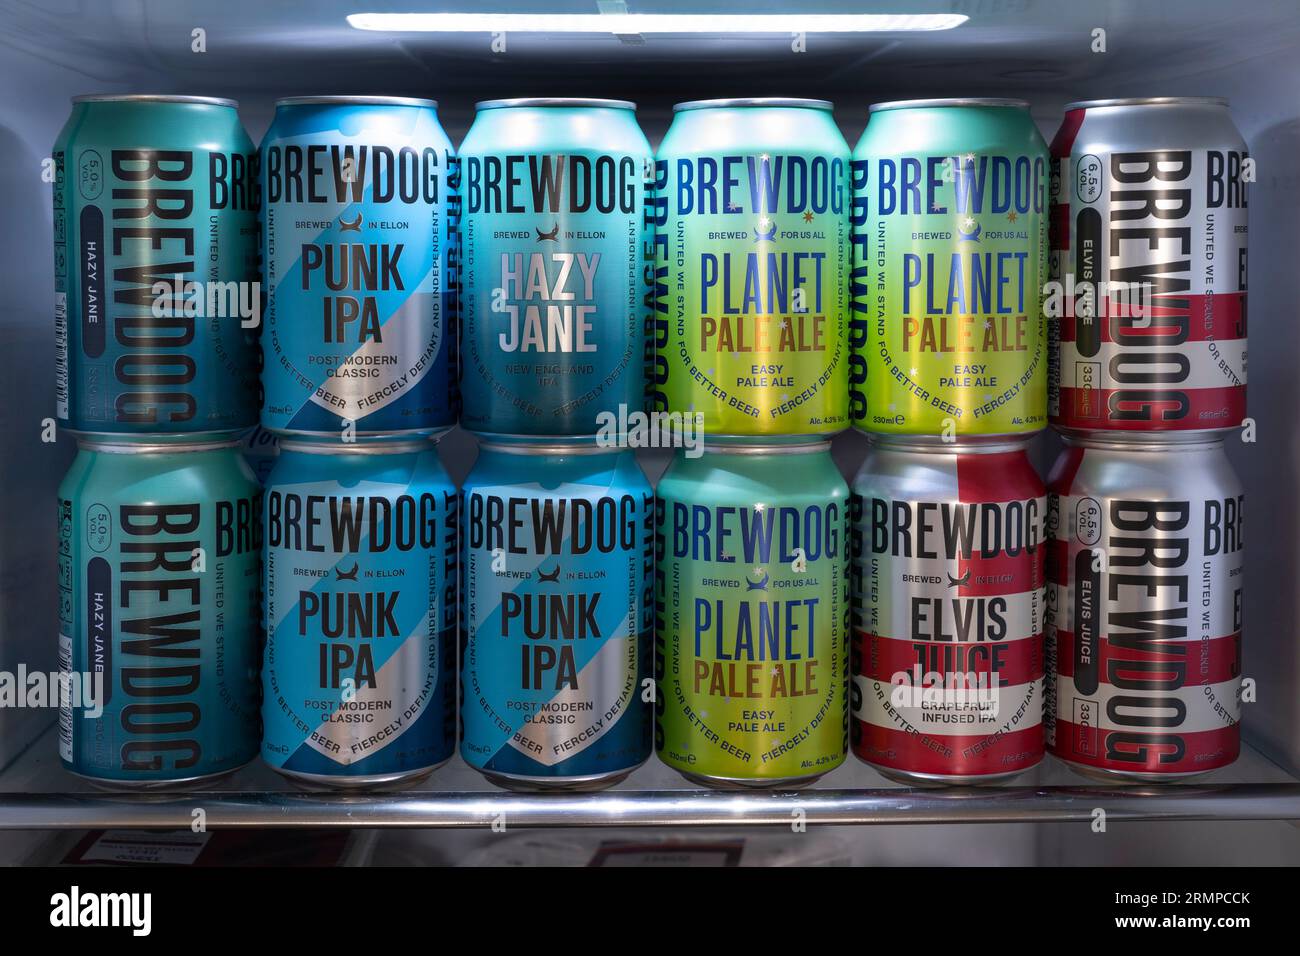 Una selezione di lattine di IPA BrewDog, tra cui Punk IPA, Planet pale Ale, Elvis Juice e Hazy Jane che riempiono il frigorifero. Inghilterra, Regno Unito Foto Stock